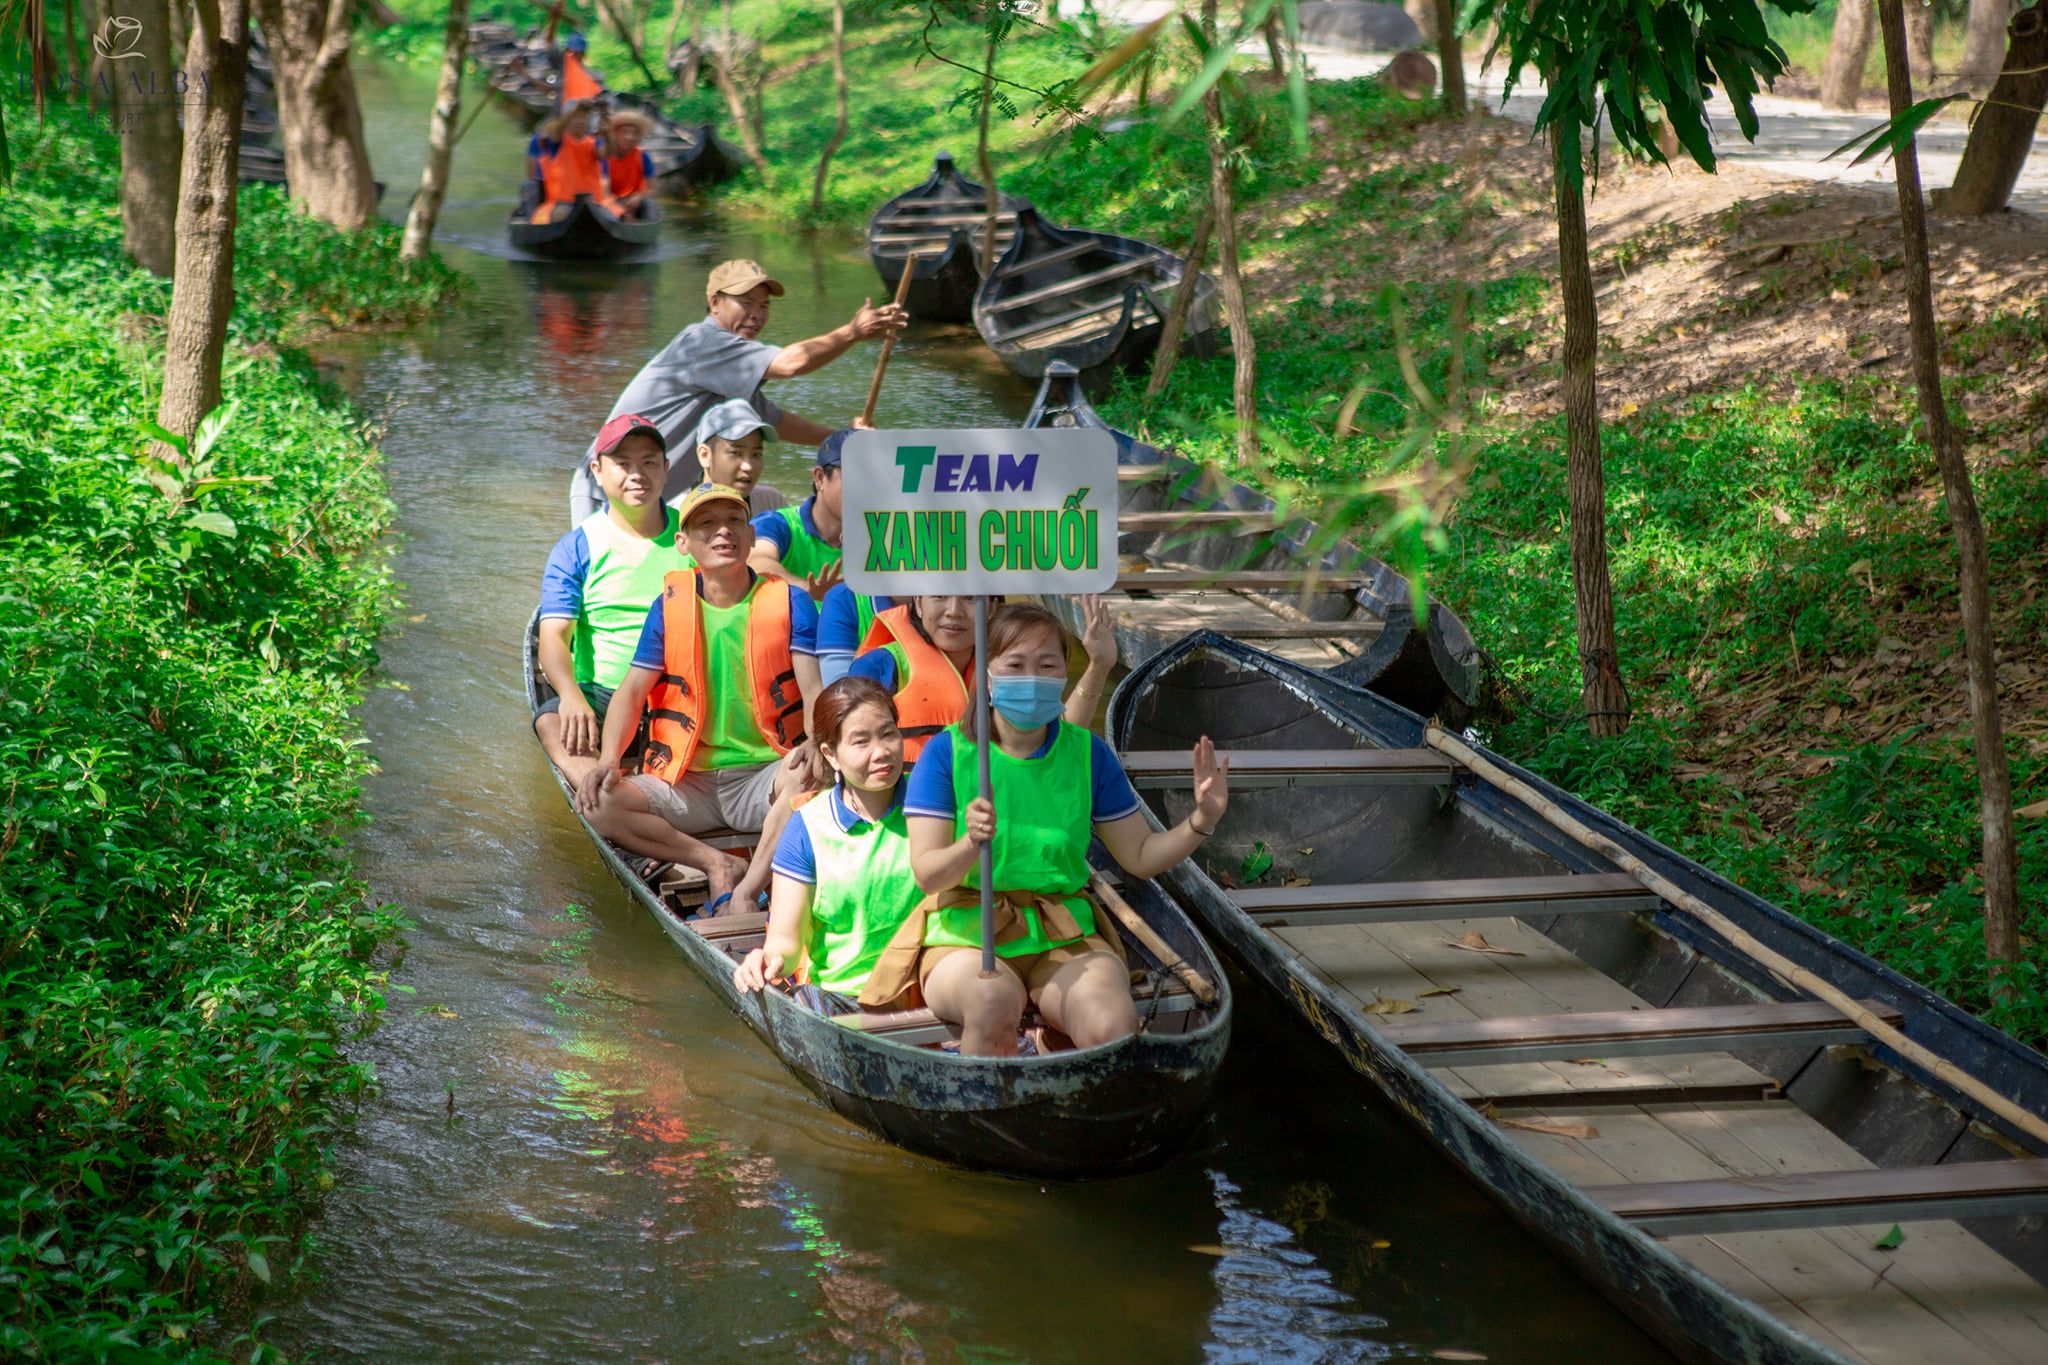 Tour Tây Sơn Bình Định: Bước vào chốn kỷ niệm của quê hương anh hùng